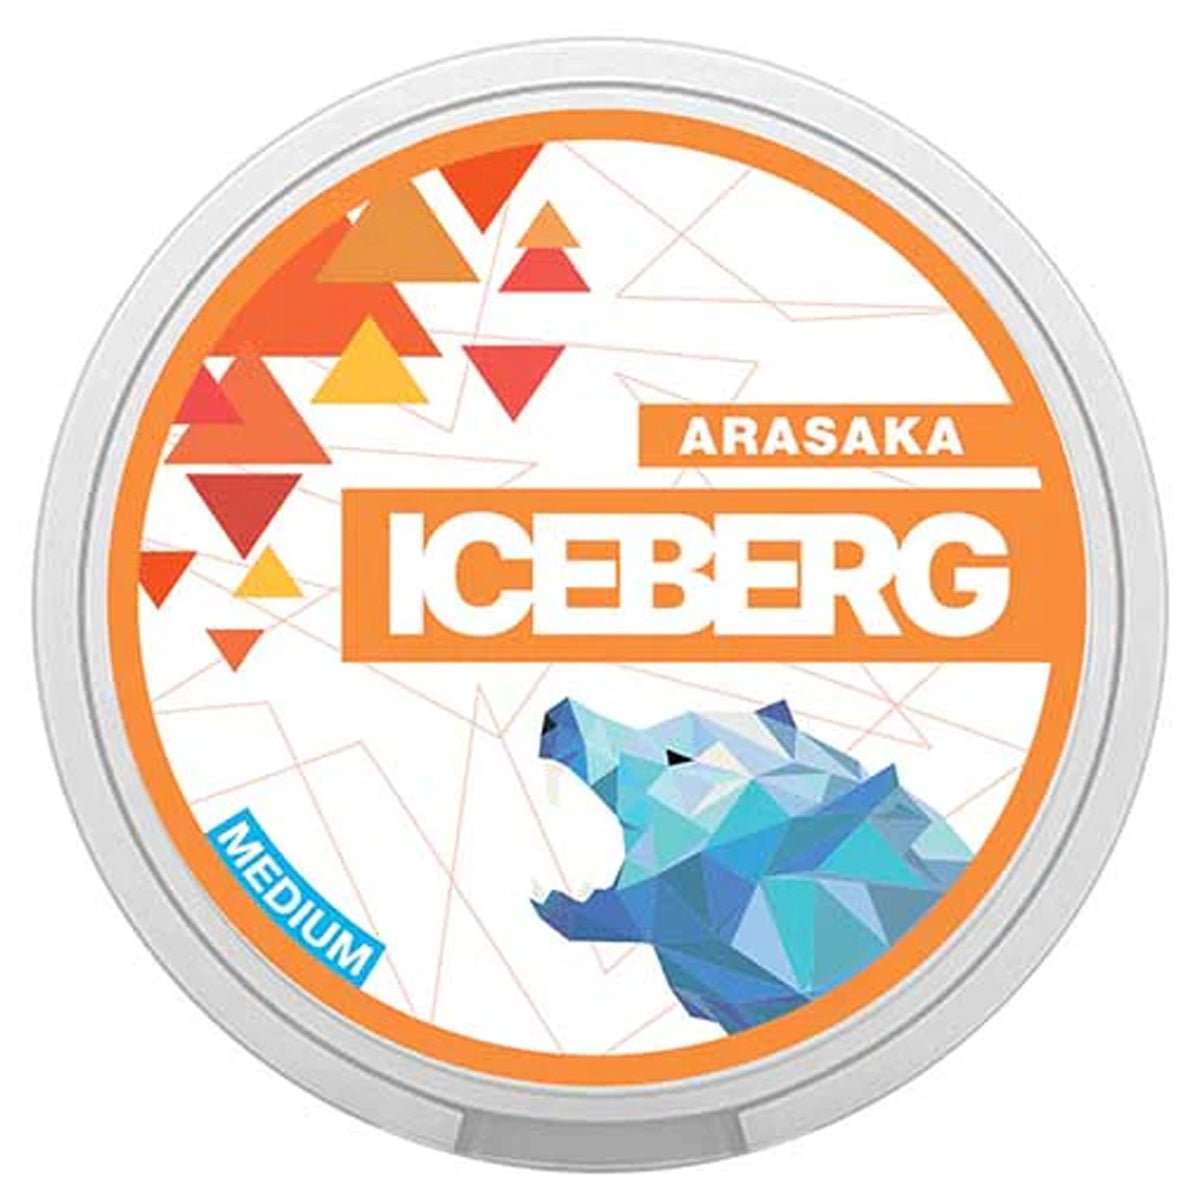 Arasaka Nicotine Pouches By Iceberg - Prime Vapes UK